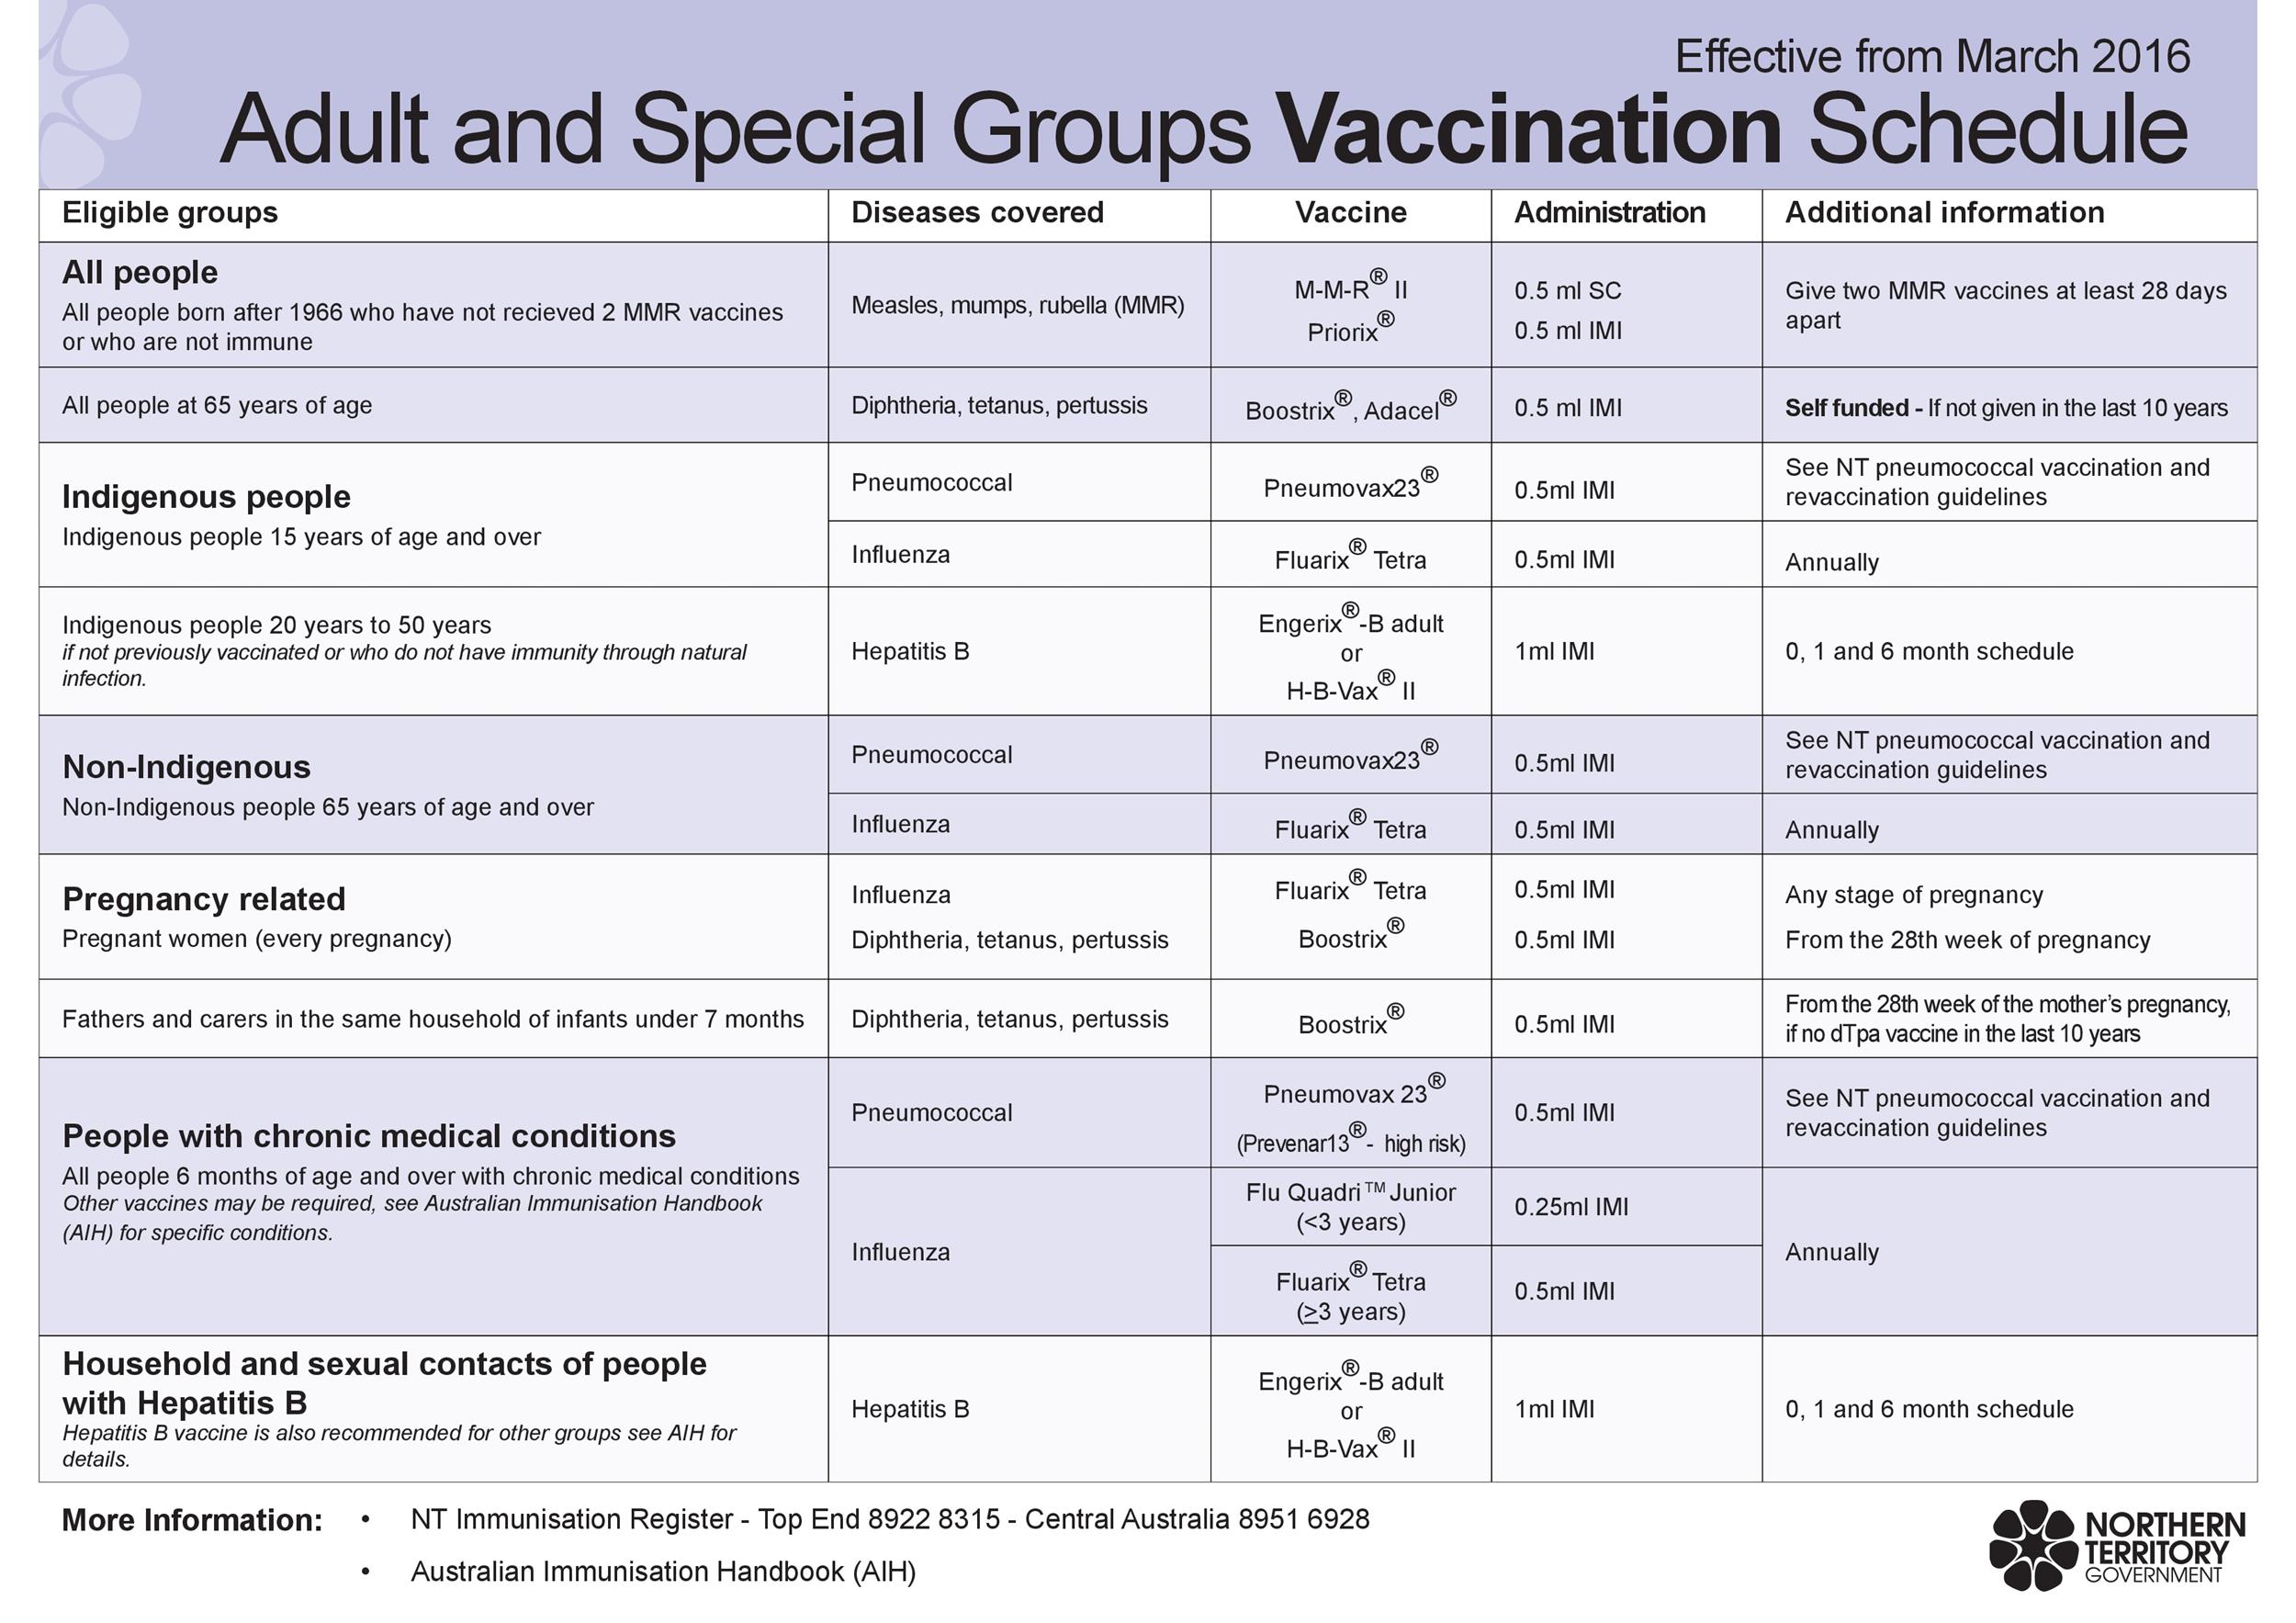 38 Useful Immunization & Vaccination Schedules [PDF] ᐅ ...